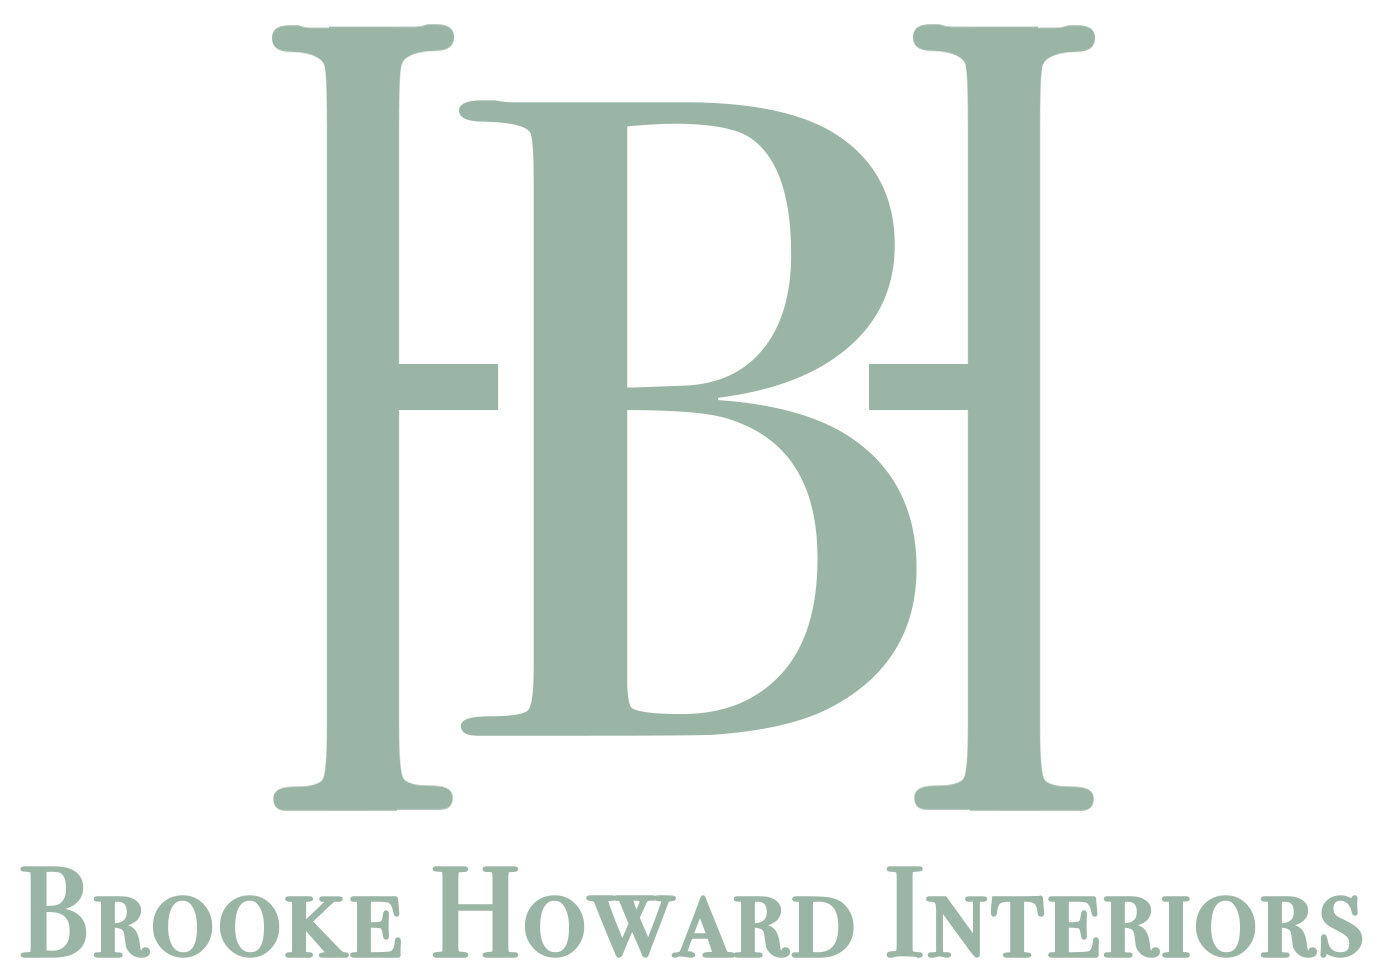 Brooke Howard Interiors